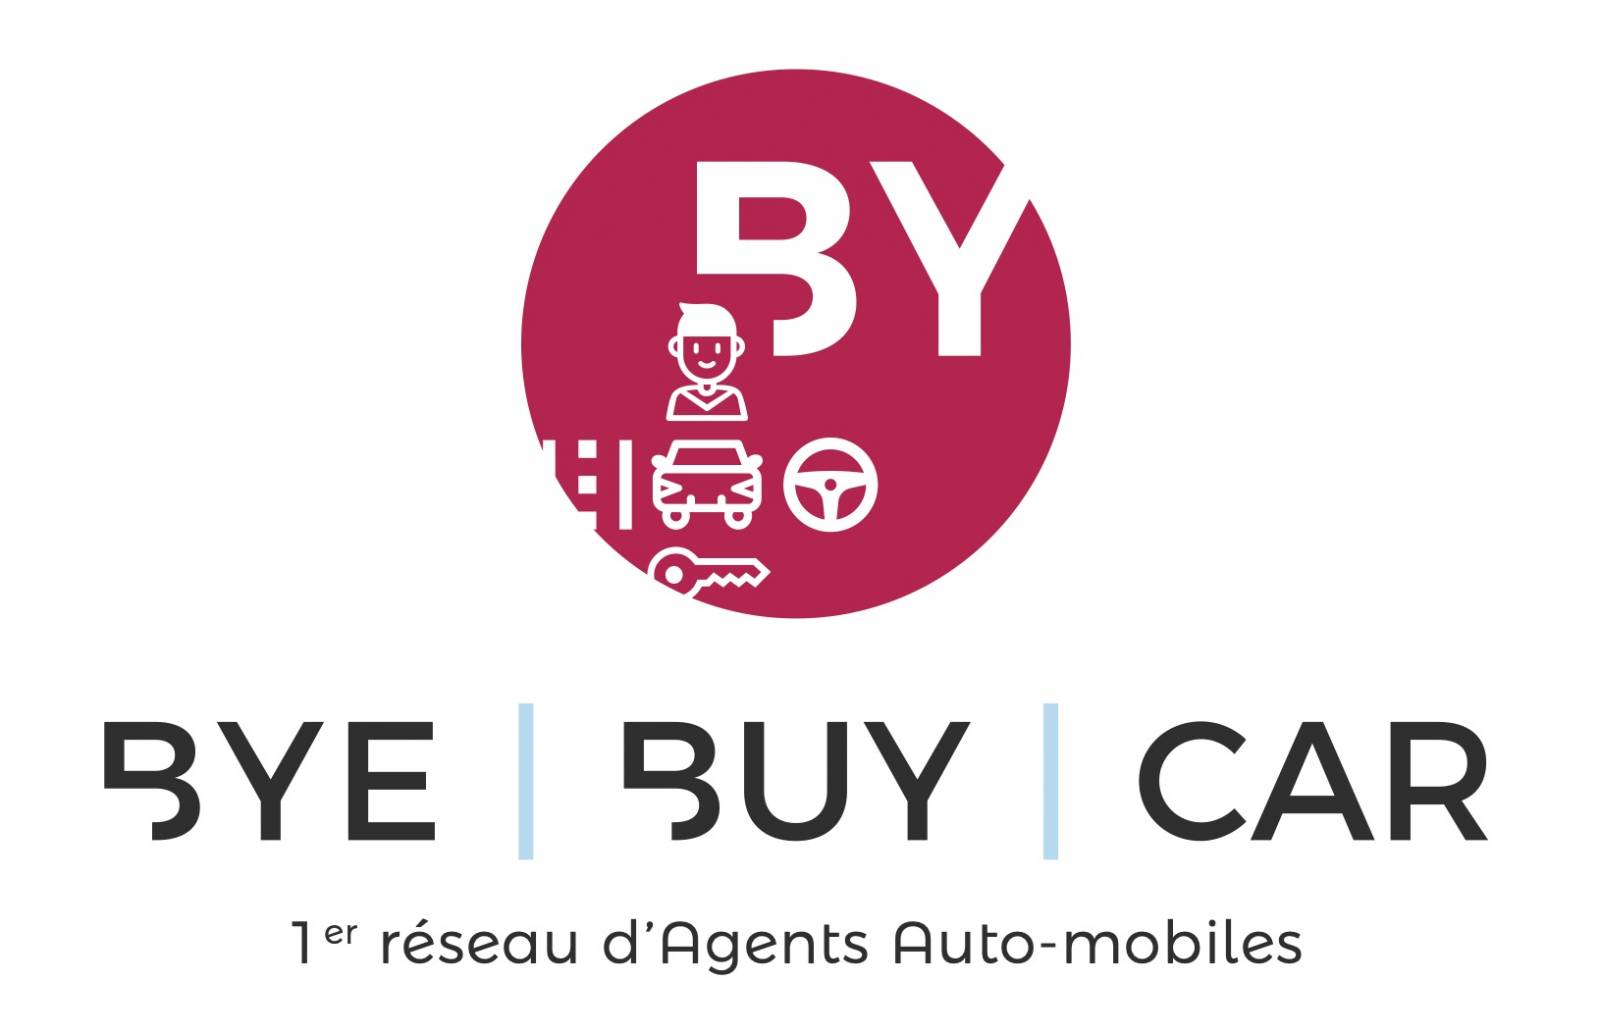 Découvrez notre nouveau service de dépôt vente : Bye Buy Car